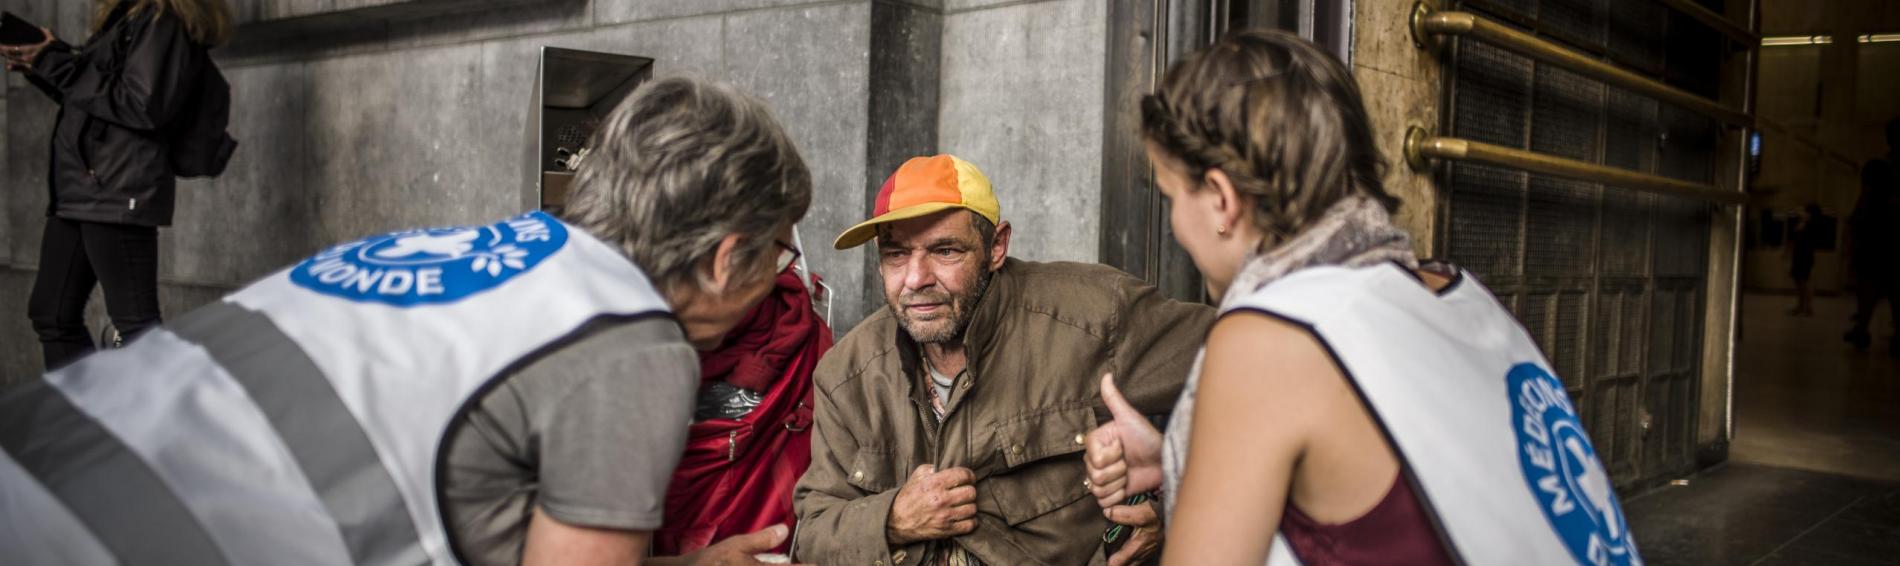 Devant la gare centrale de Bruxelles, deux travailleuses de Médecins du Monde sont assises aux côtés d'un homme sans domicile fixe, lui expliquant leur mission.